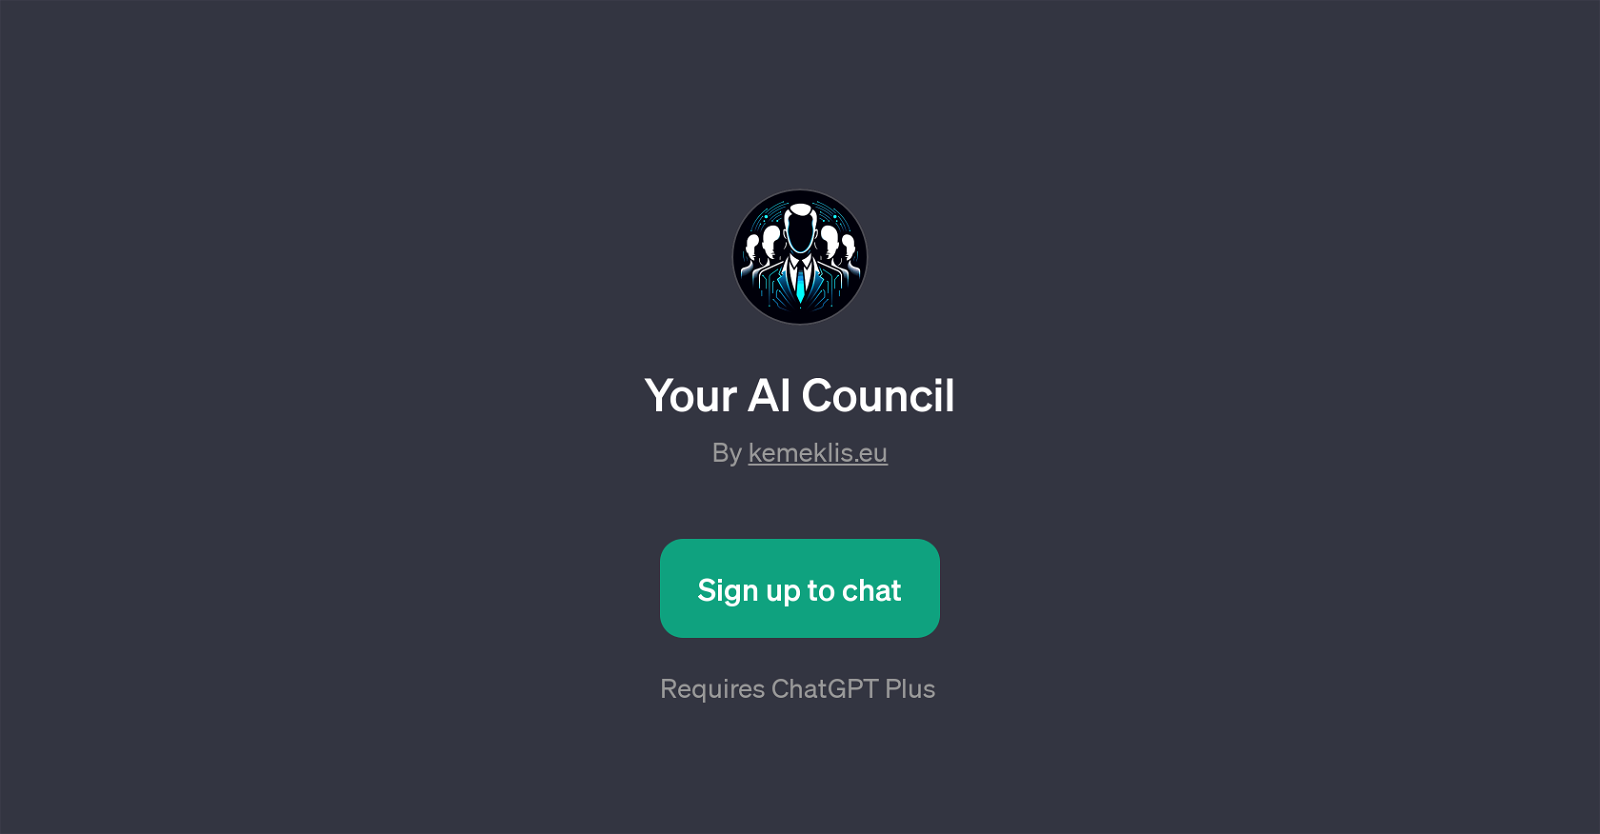 Your AI Council website